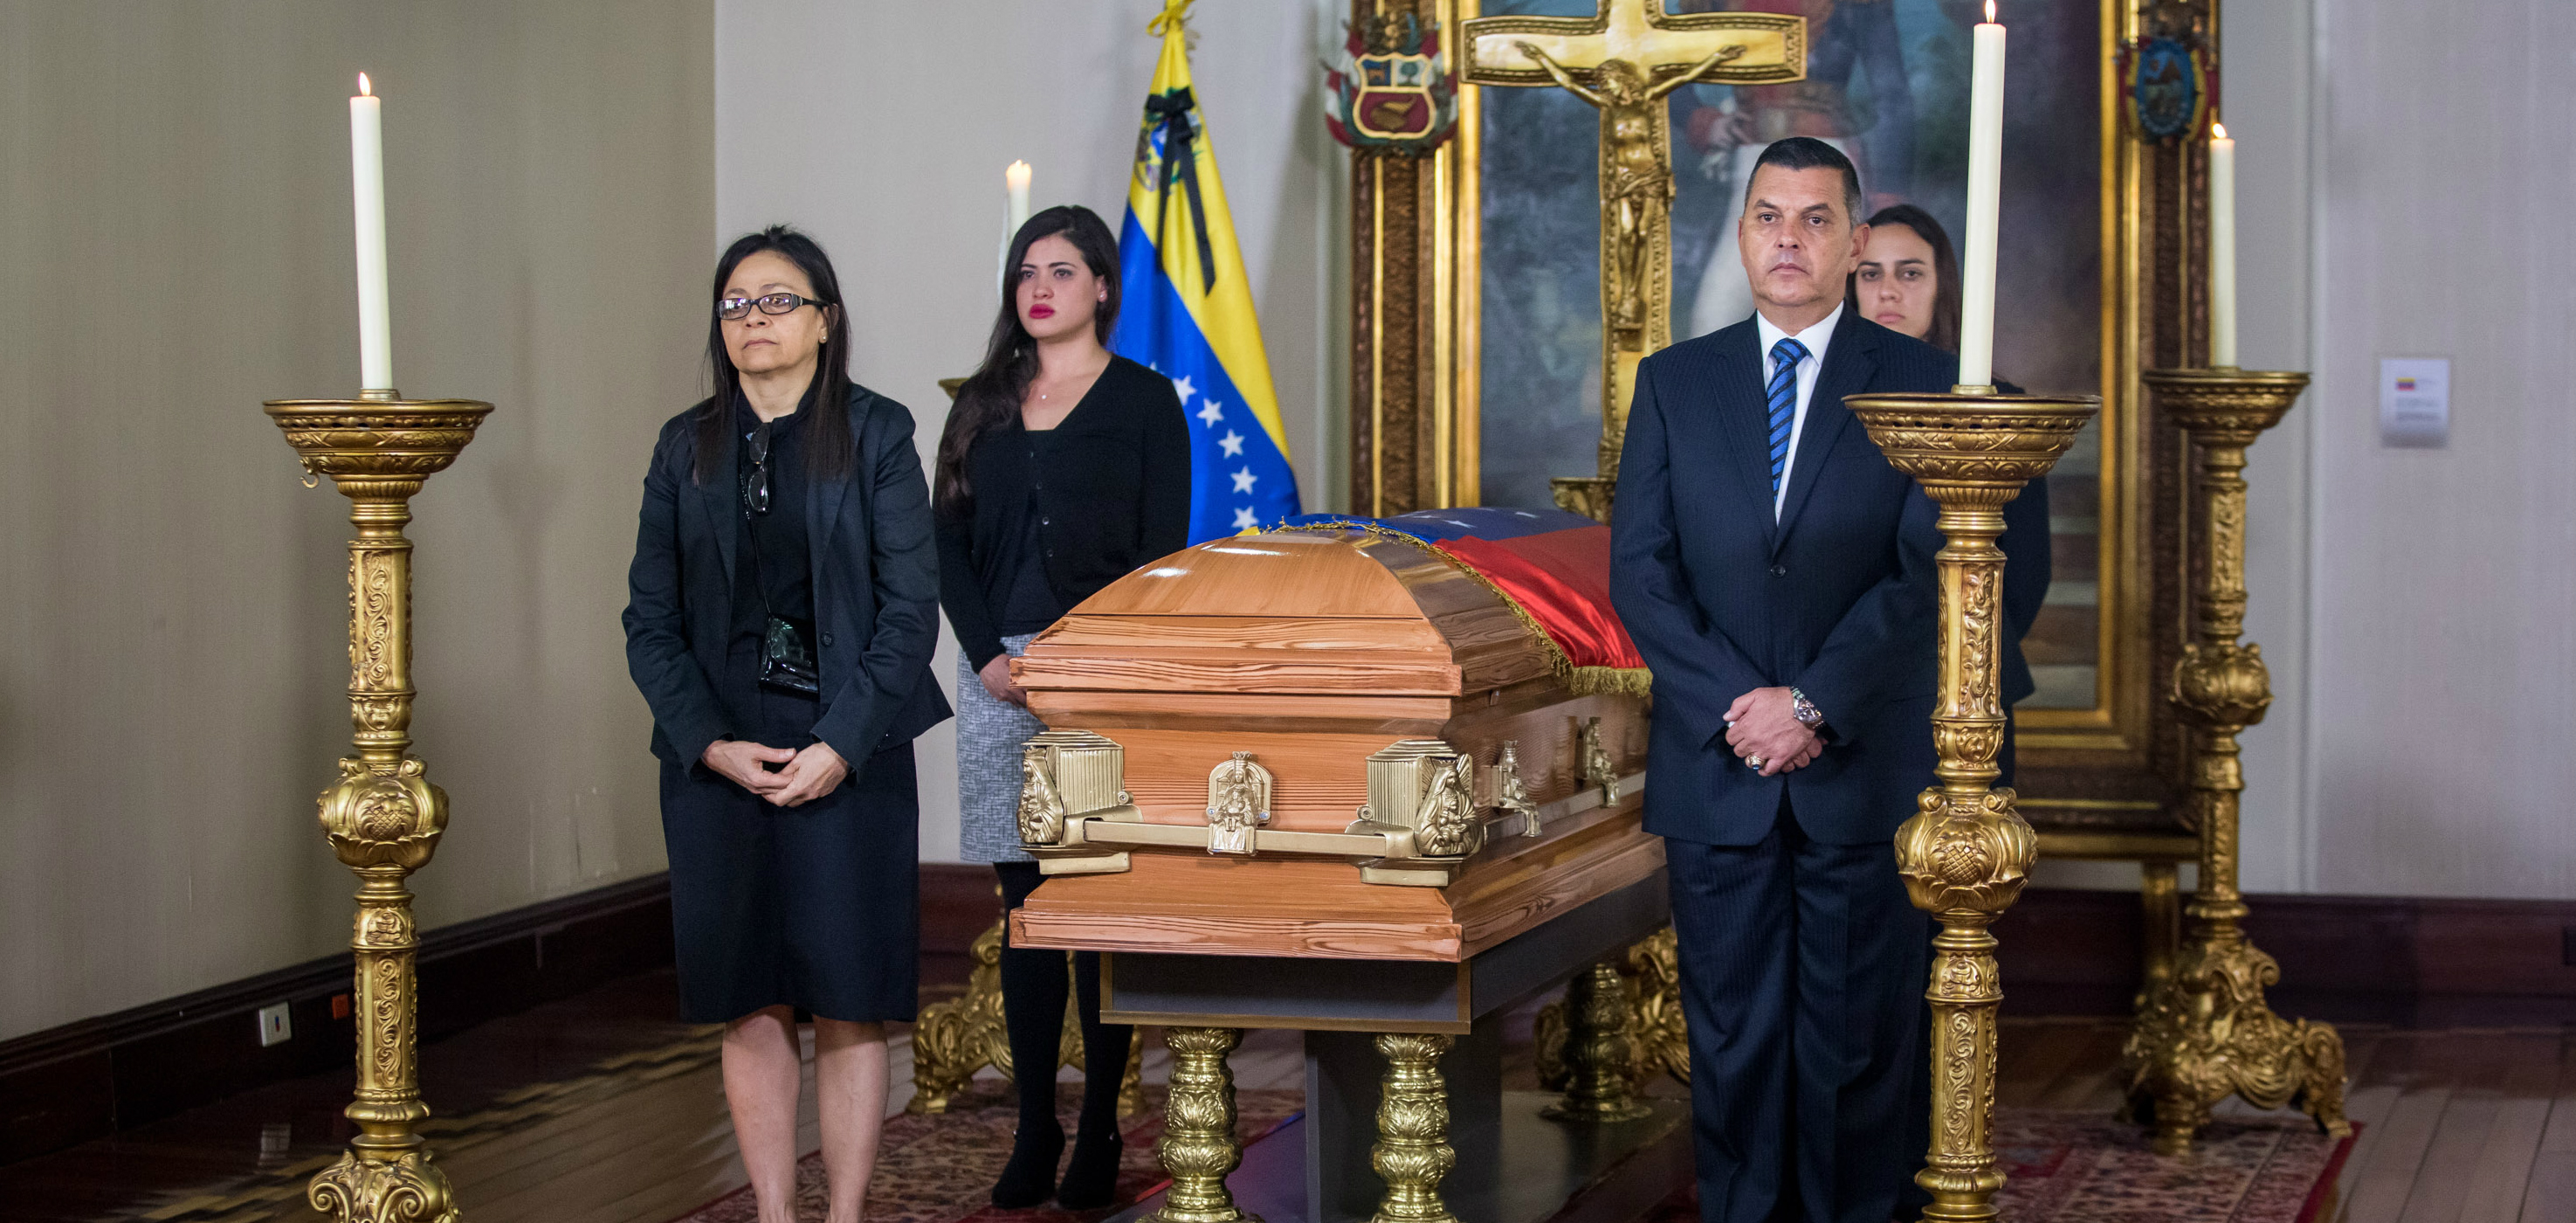 Familiares del fallecido embajador de Venezuela ante la OEA Bernardo Álvarez, participan en honores póstumos. EFE